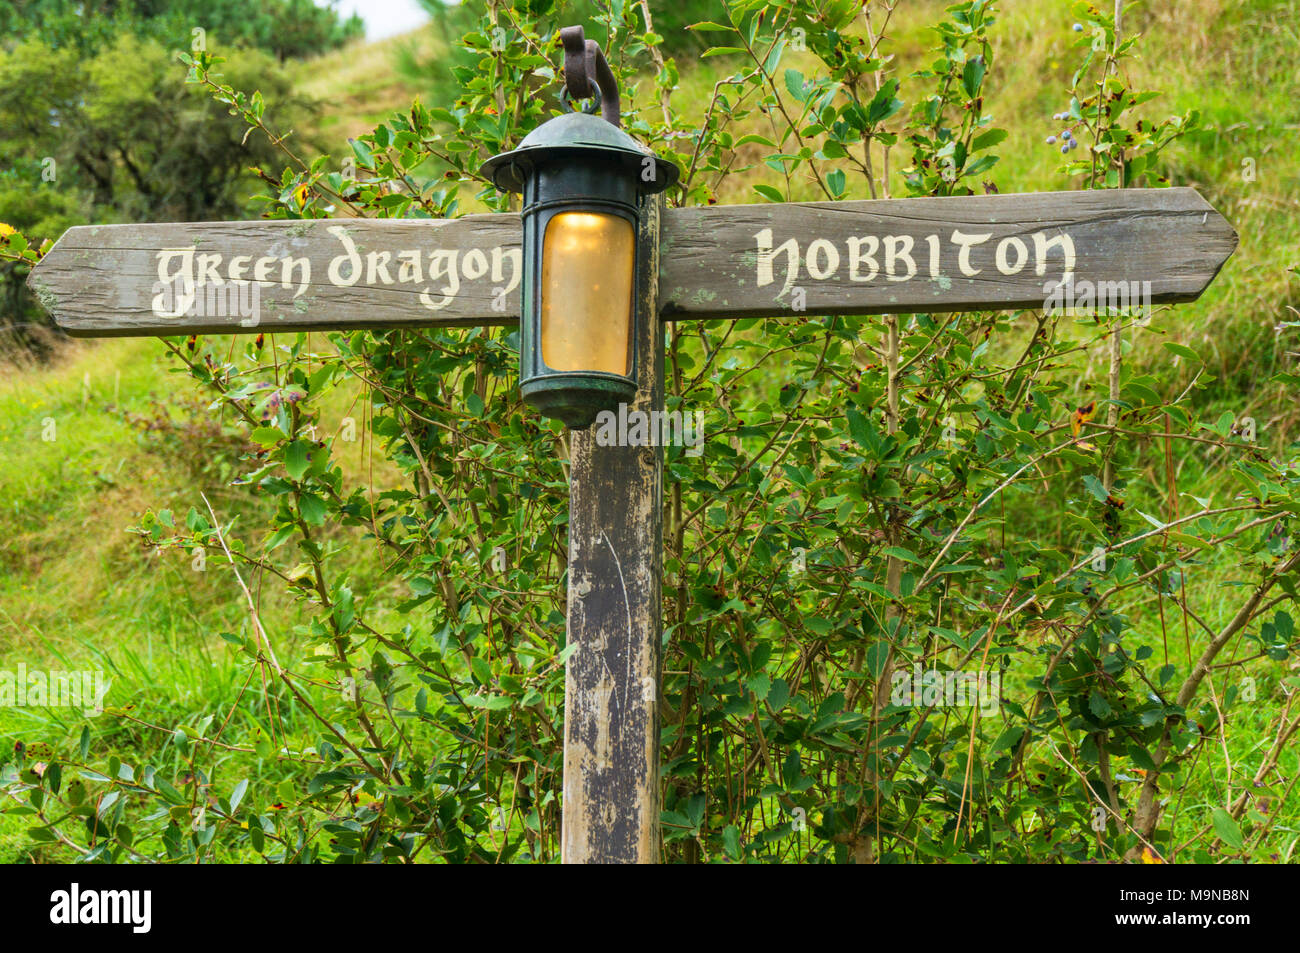 Nouvelle-zélande Nouvelle-zélande Hobbiton Matamata Hobbiton cinéma village fictif de Hobbiton dans la comté de Bilbo le Hobbit et le Seigneur des anneaux bookssign Banque D'Images